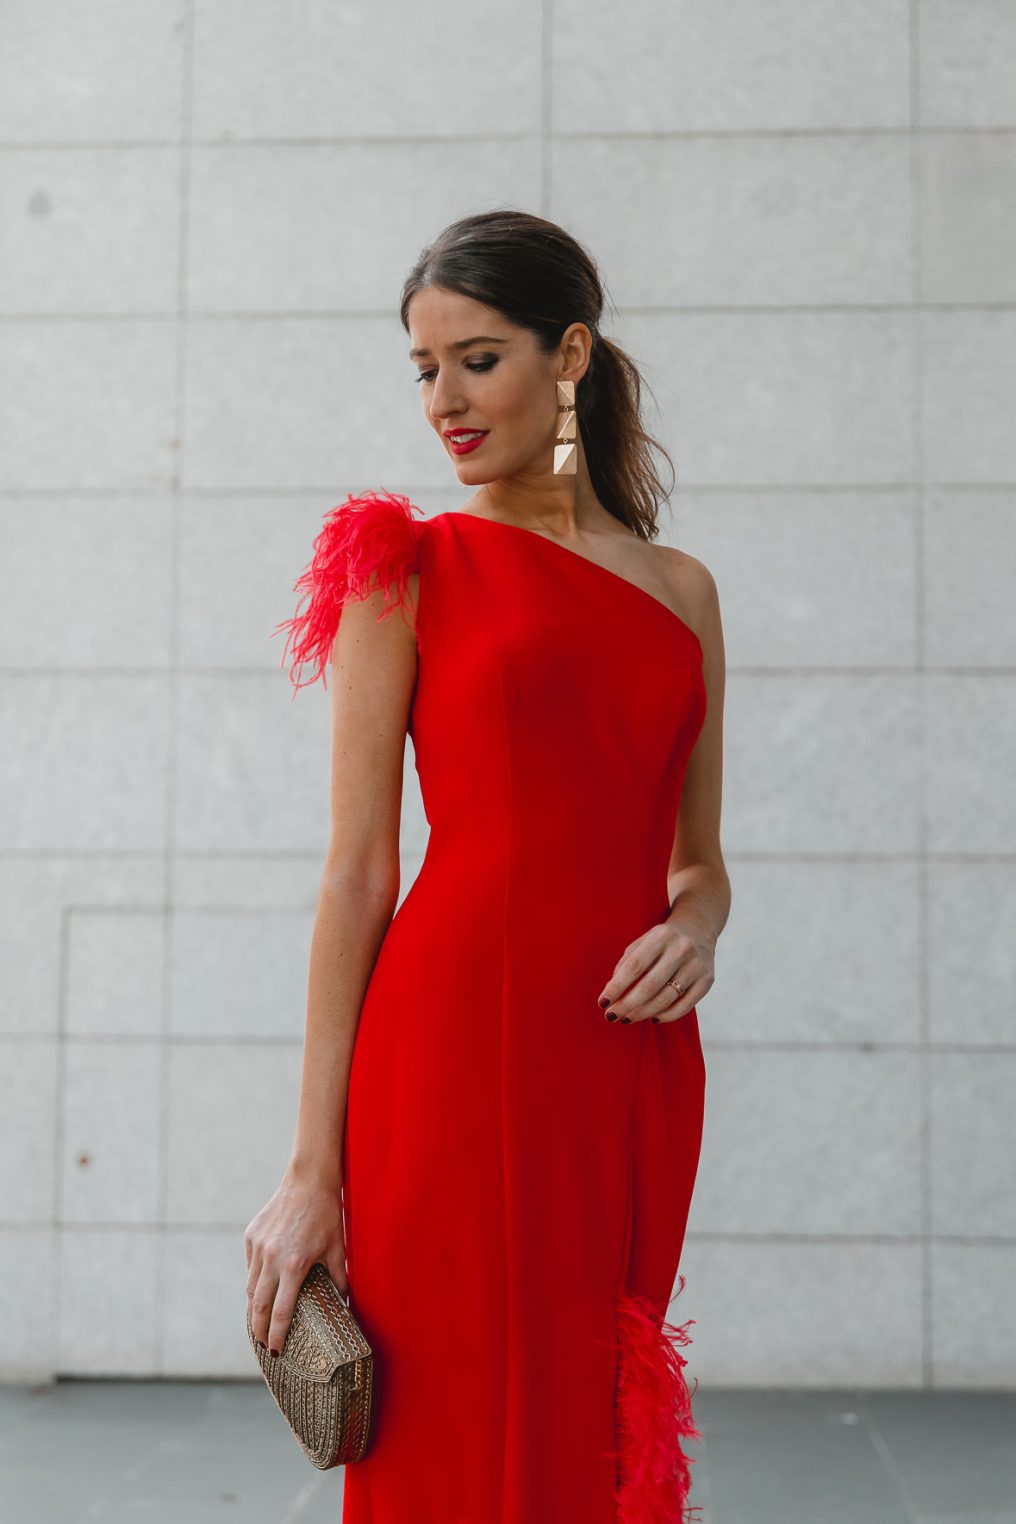 Look invitada de noche: el vestido rojo de plumas